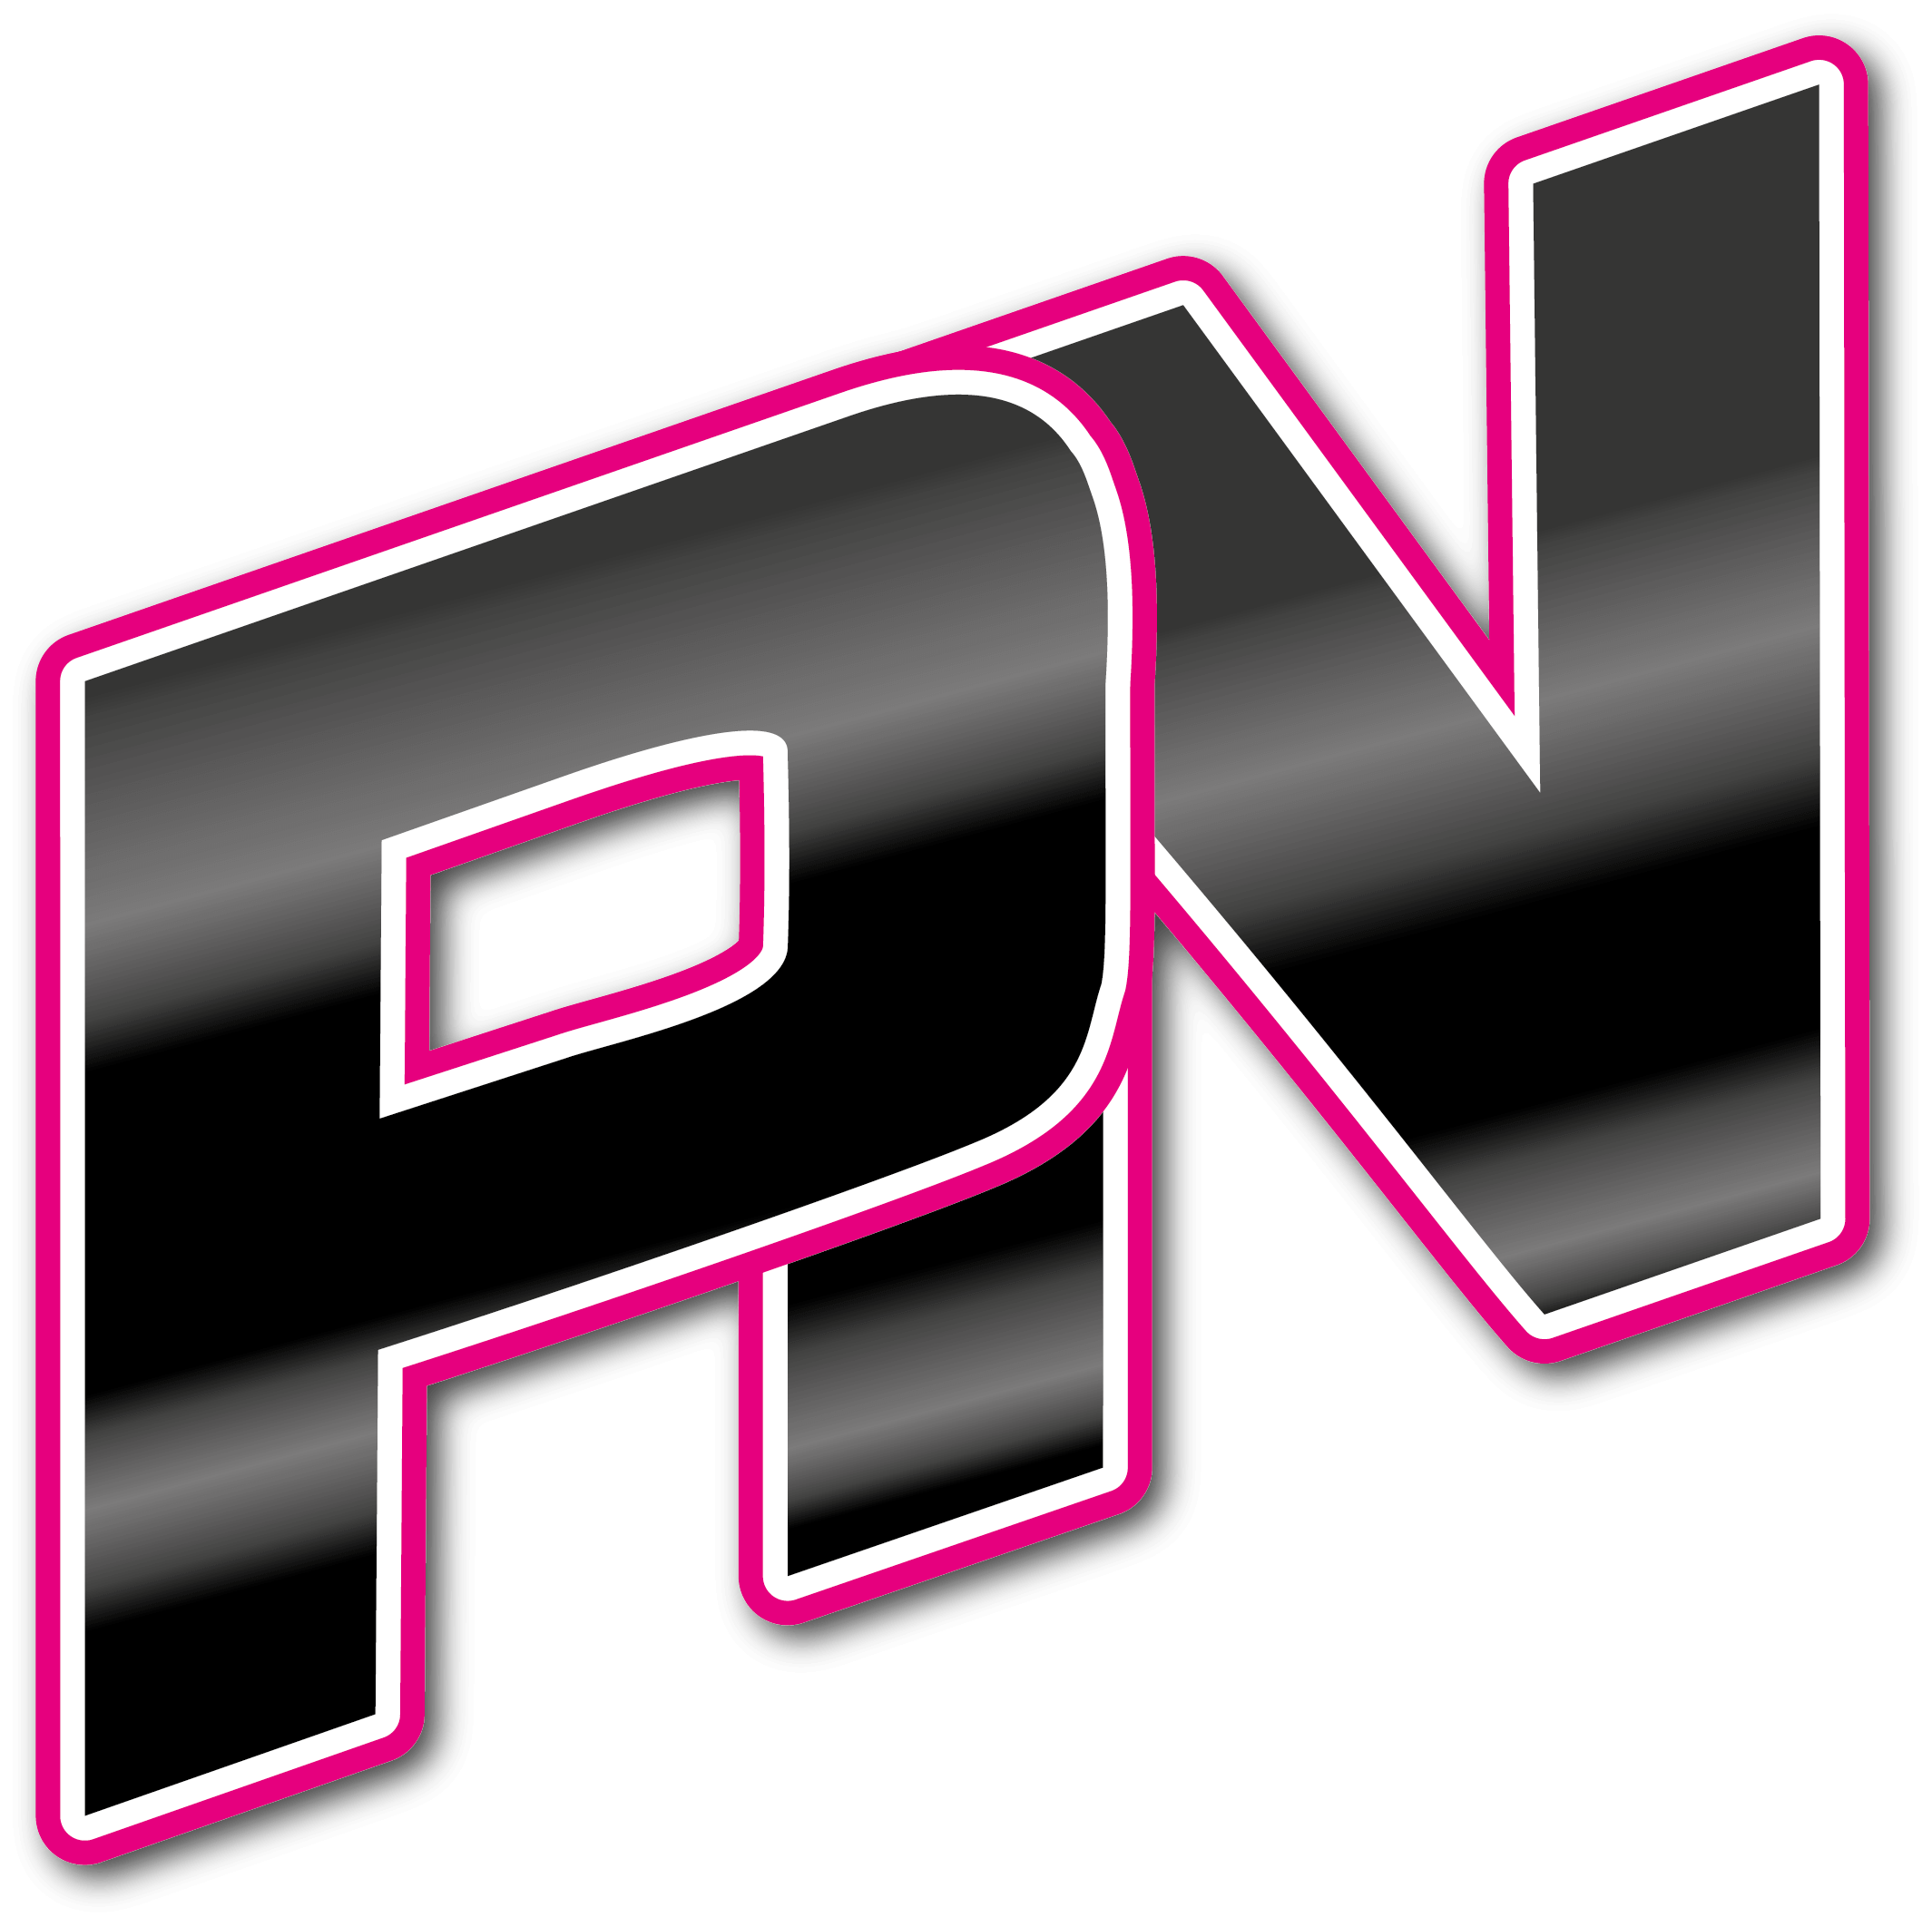 PN-logotyp i svart och rosa